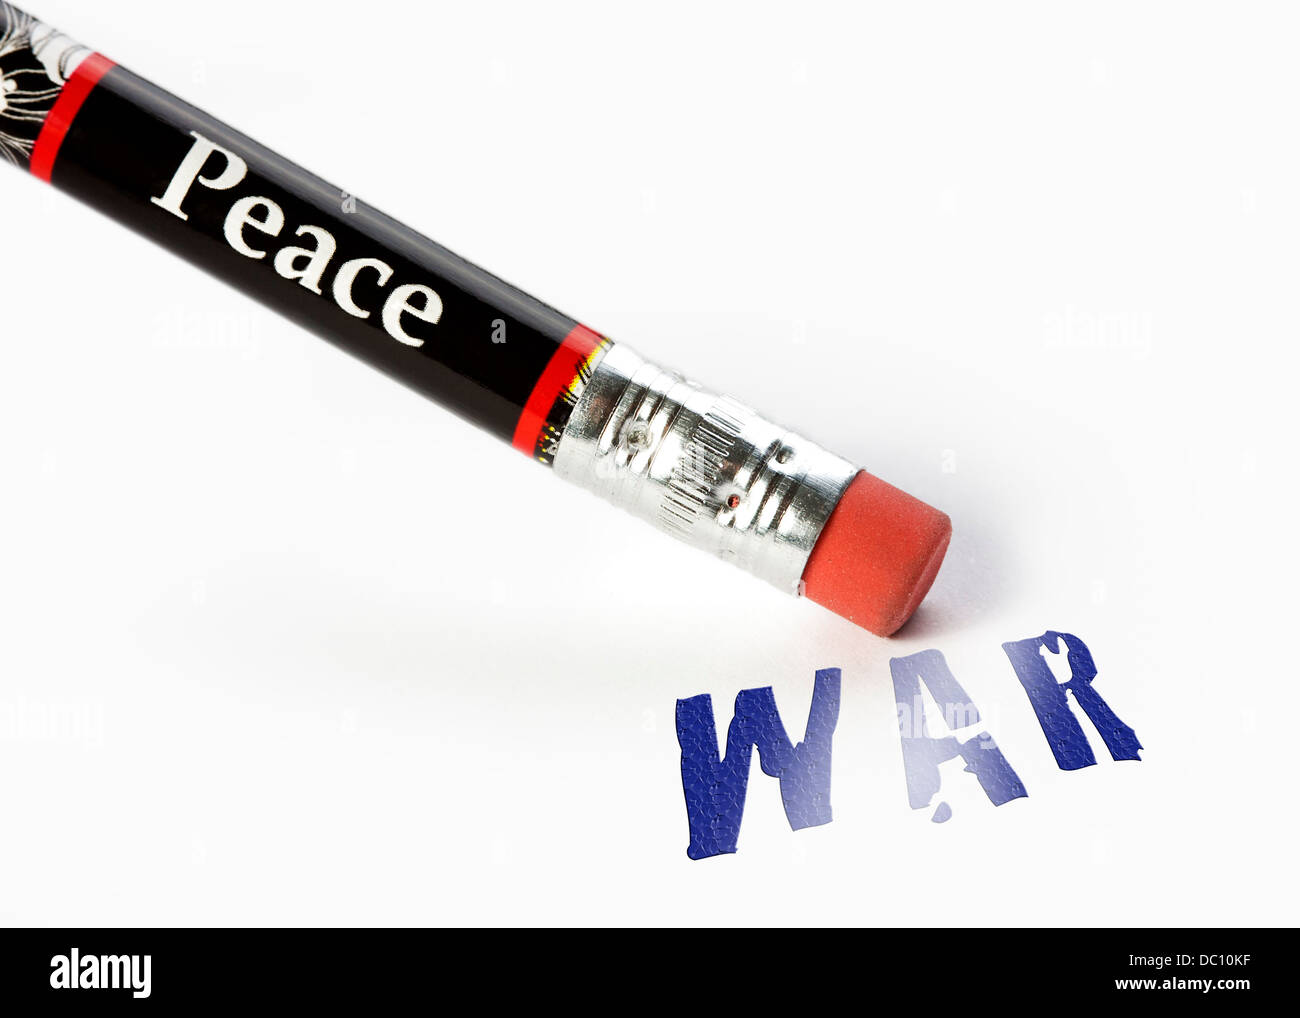 Concept de la paix guerre effacer avec une gomme analogie Banque D'Images